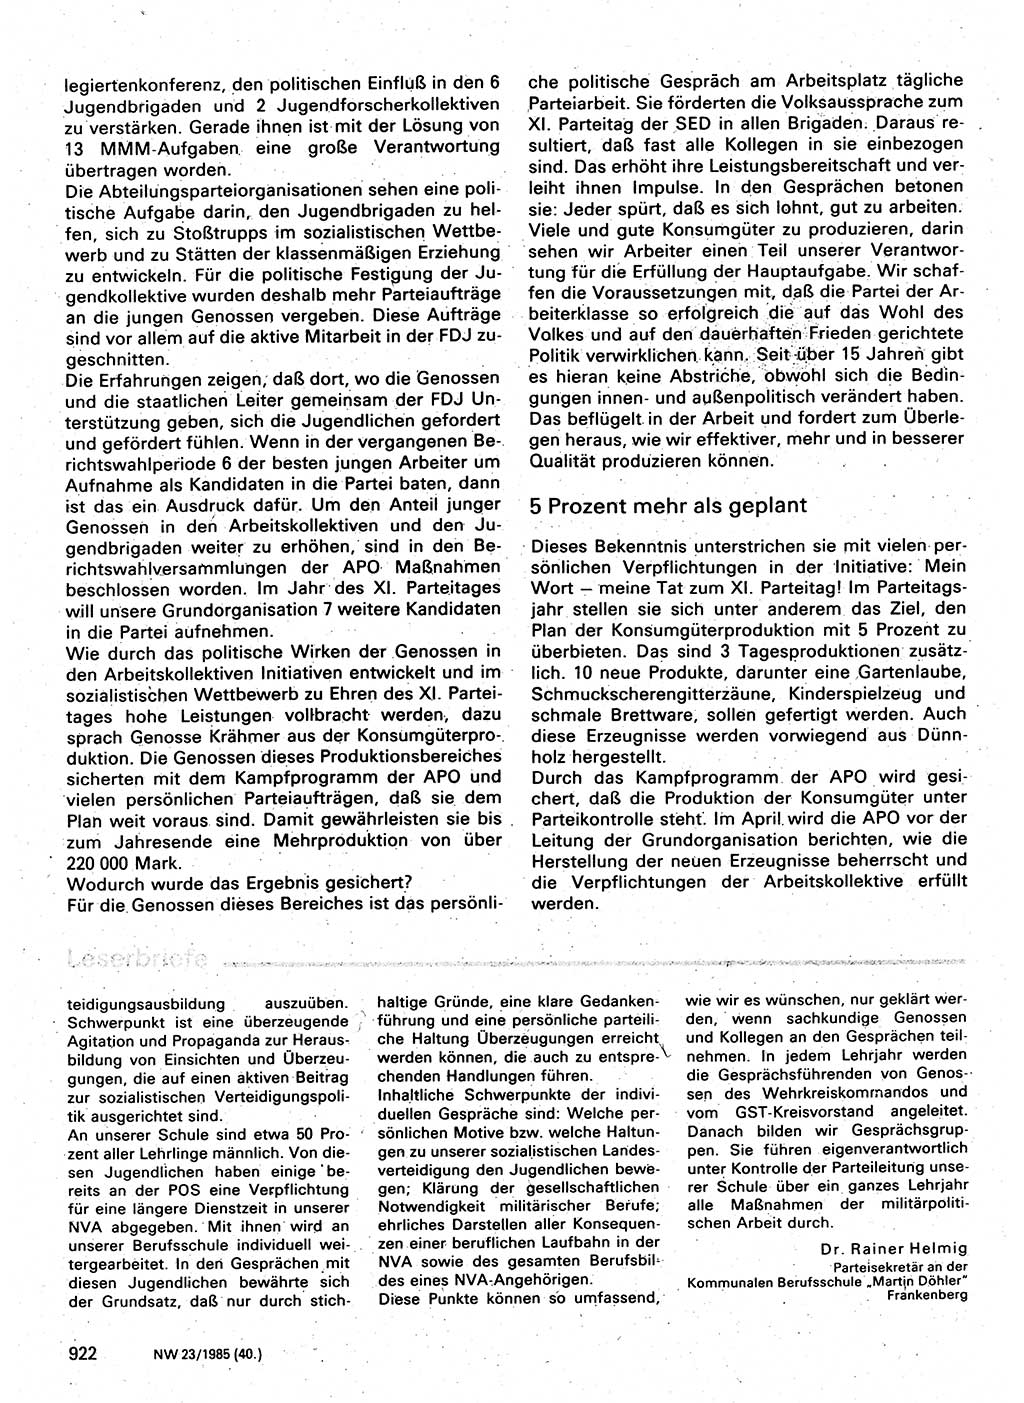 Neuer Weg (NW), Organ des Zentralkomitees (ZK) der SED (Sozialistische Einheitspartei Deutschlands) fÃ¼r Fragen des Parteilebens, 40. Jahrgang [Deutsche Demokratische Republik (DDR)] 1985, Seite 922 (NW ZK SED DDR 1985, S. 922)